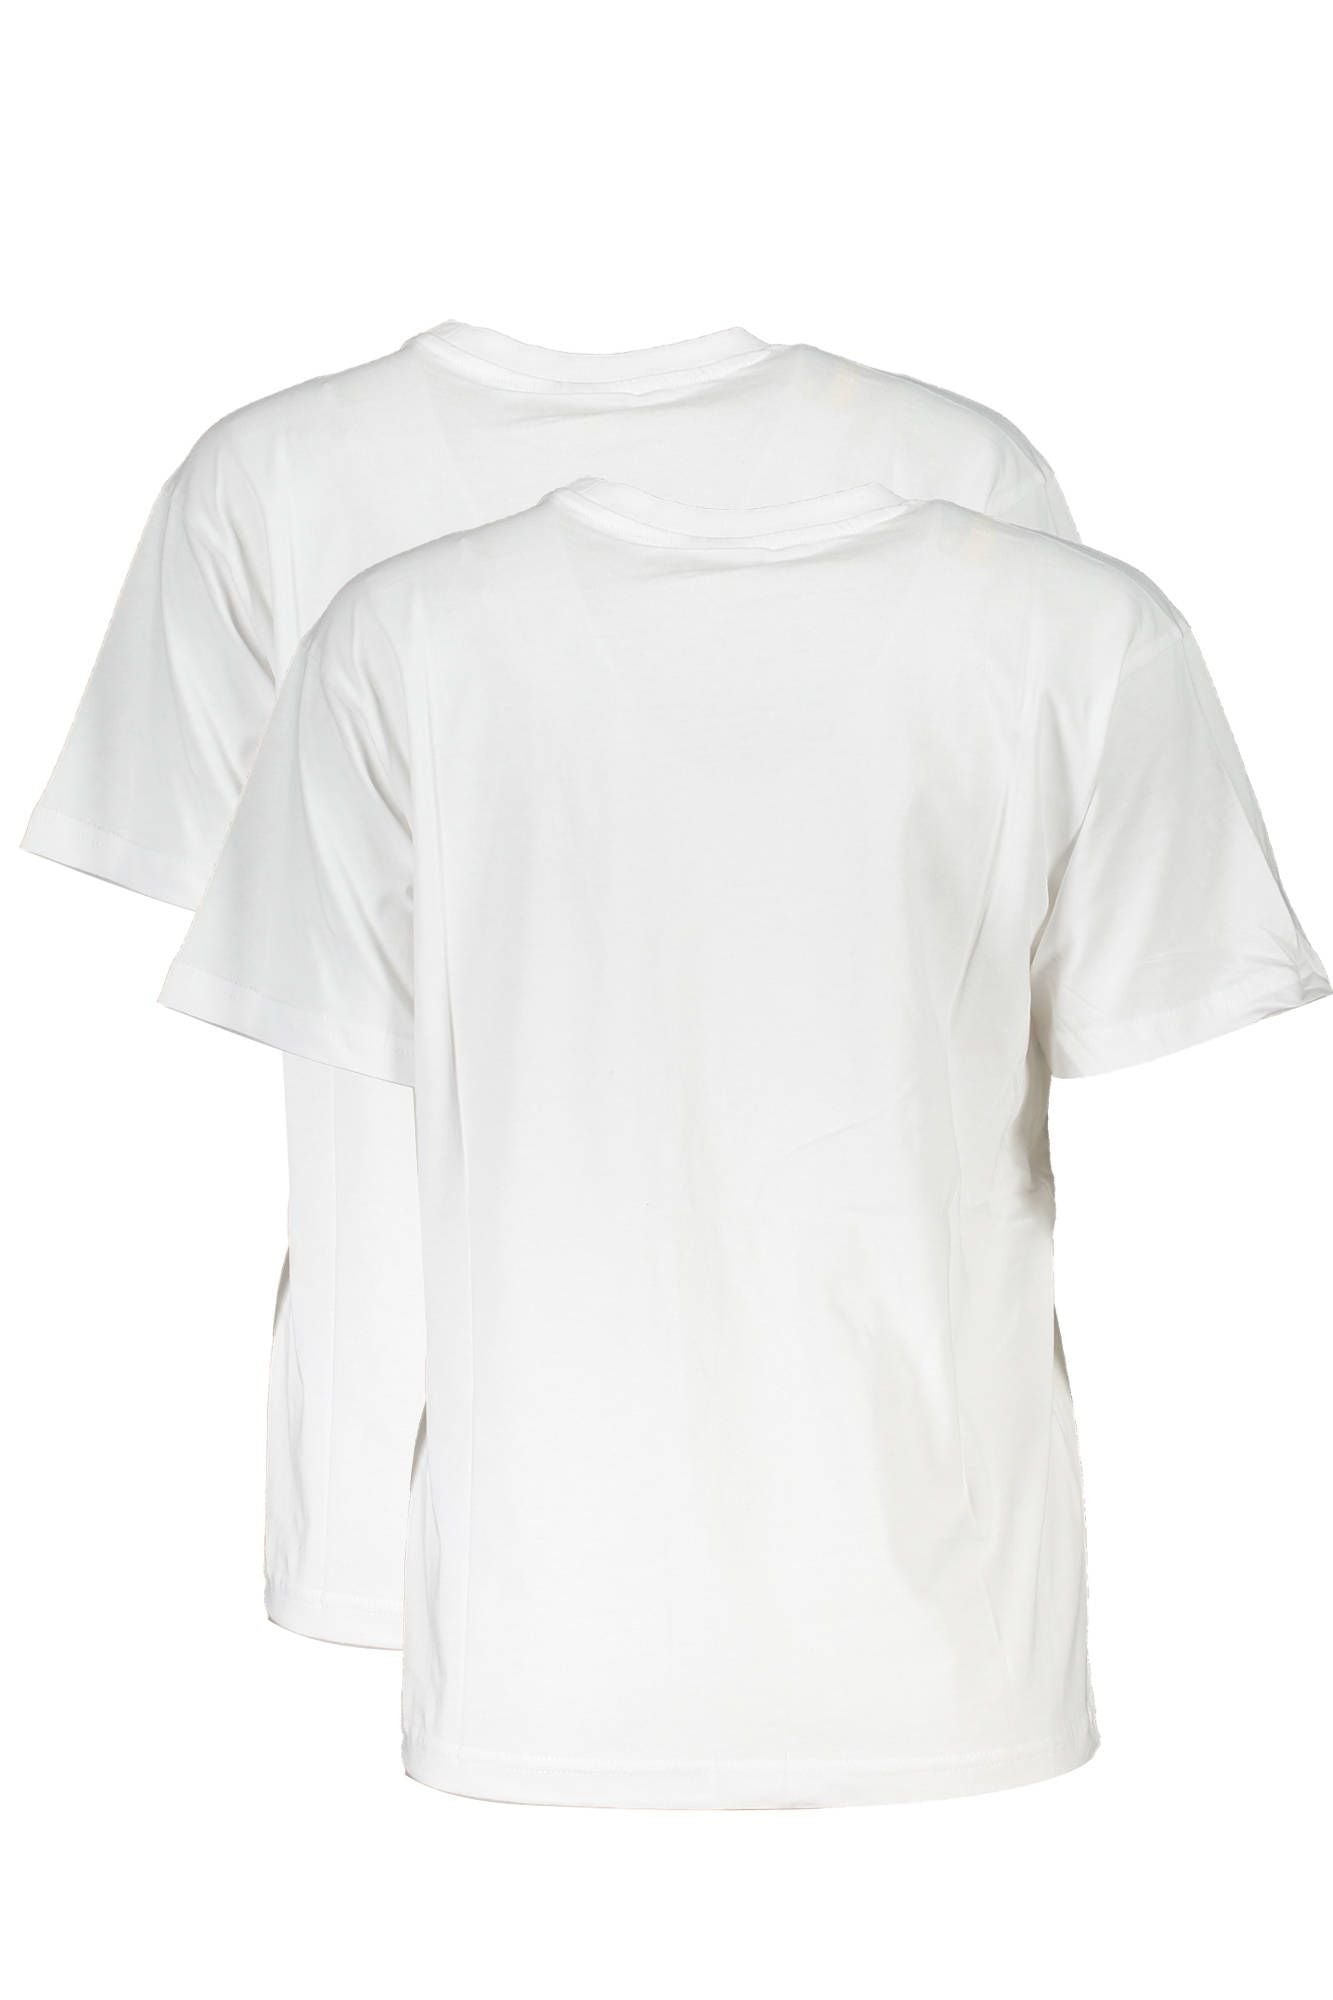 Fila White Cotton Tops & T-Shirt